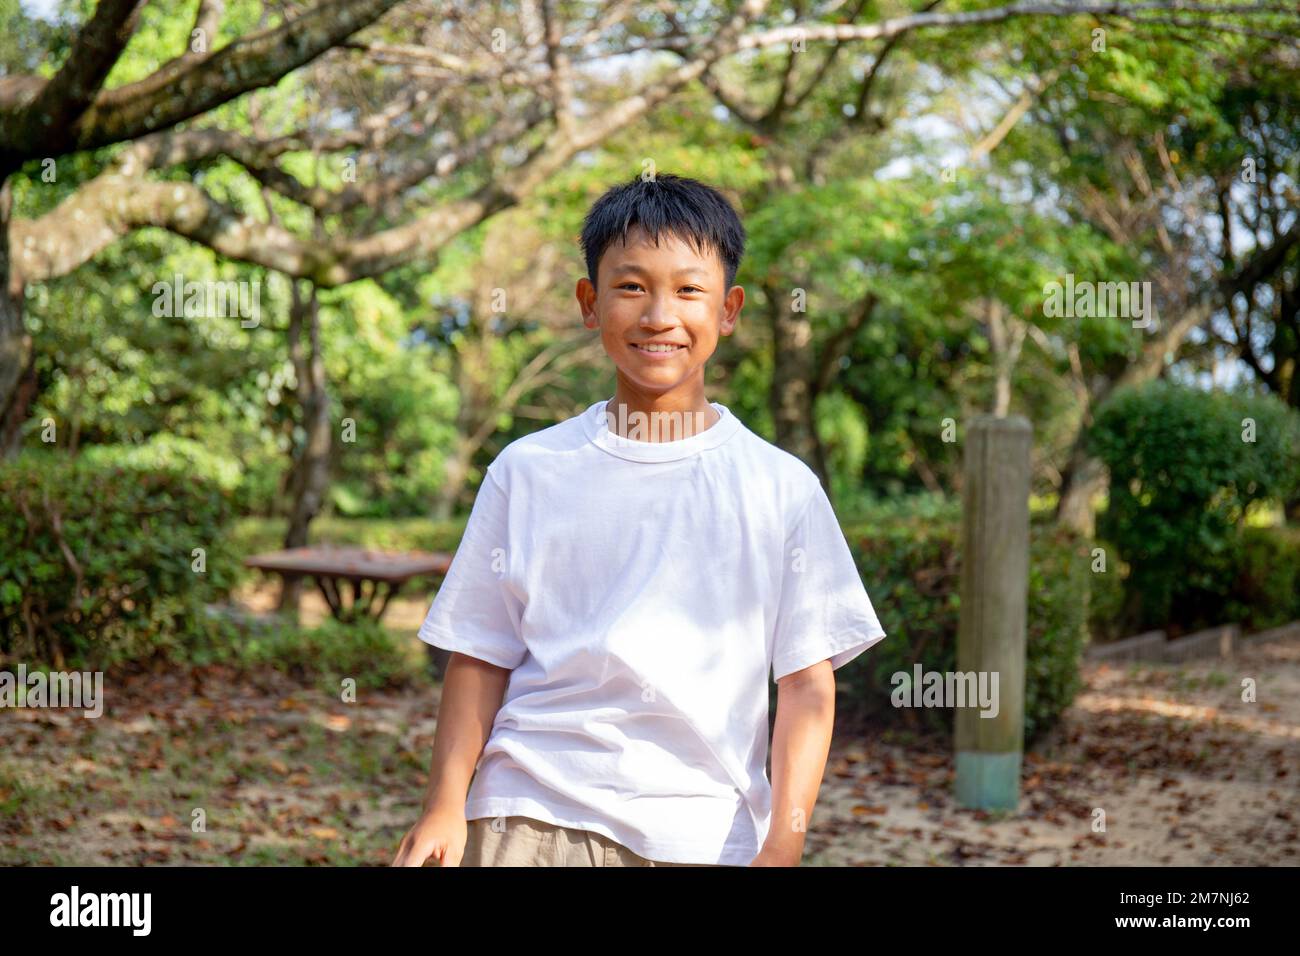 Un niño de 13 años en un teeshirt blanco, sonriente, al aire libre en un parque. Foto de stock